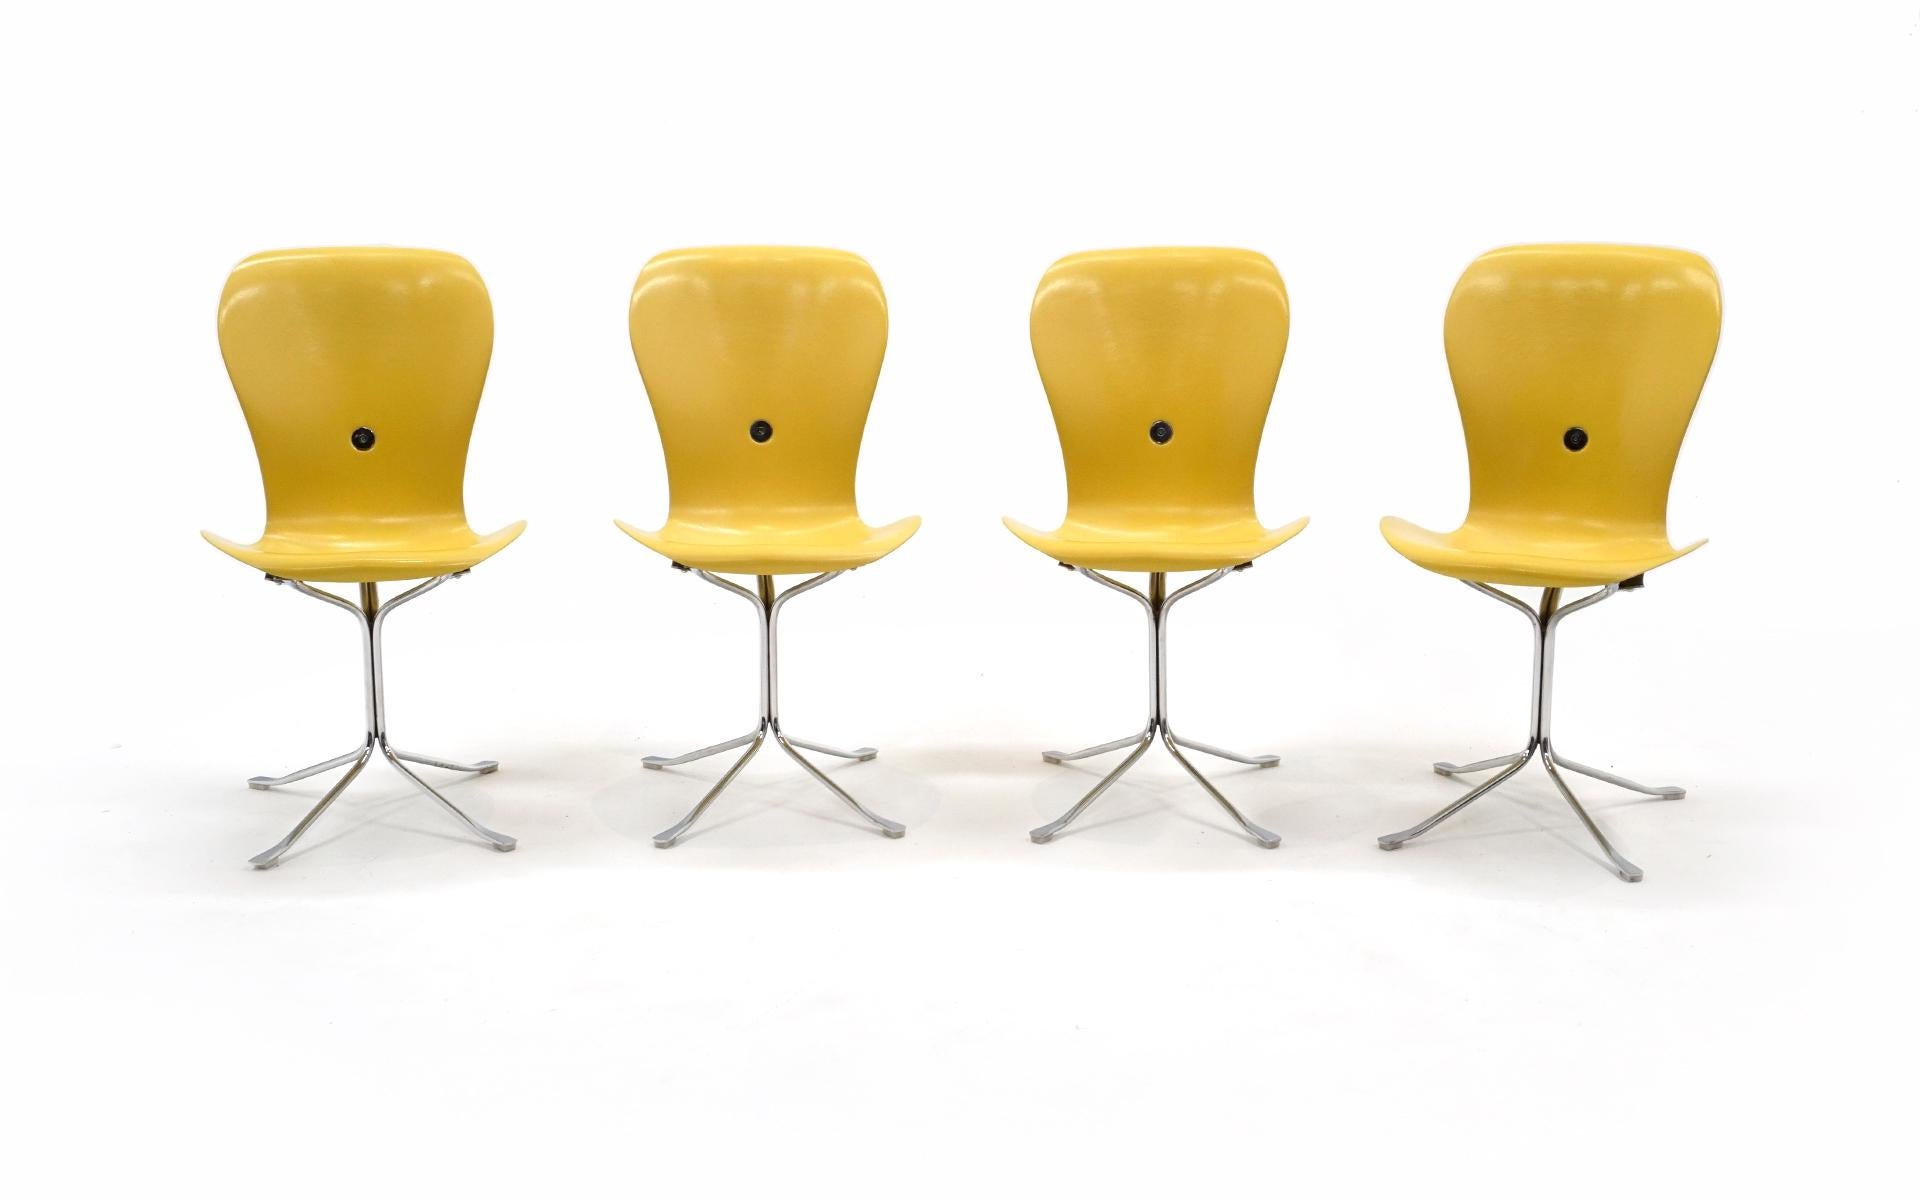 Außergewöhnlicher Satz von vier völlig originellen Ion-Stühlen, die von Gideon Kramer für die Aussichtsplattform der Seattle Space Needle entworfen wurden. Die ursprüngliche gelbe Lackierung ist in sehr gutem Zustand, ohne Chips, Risse oder